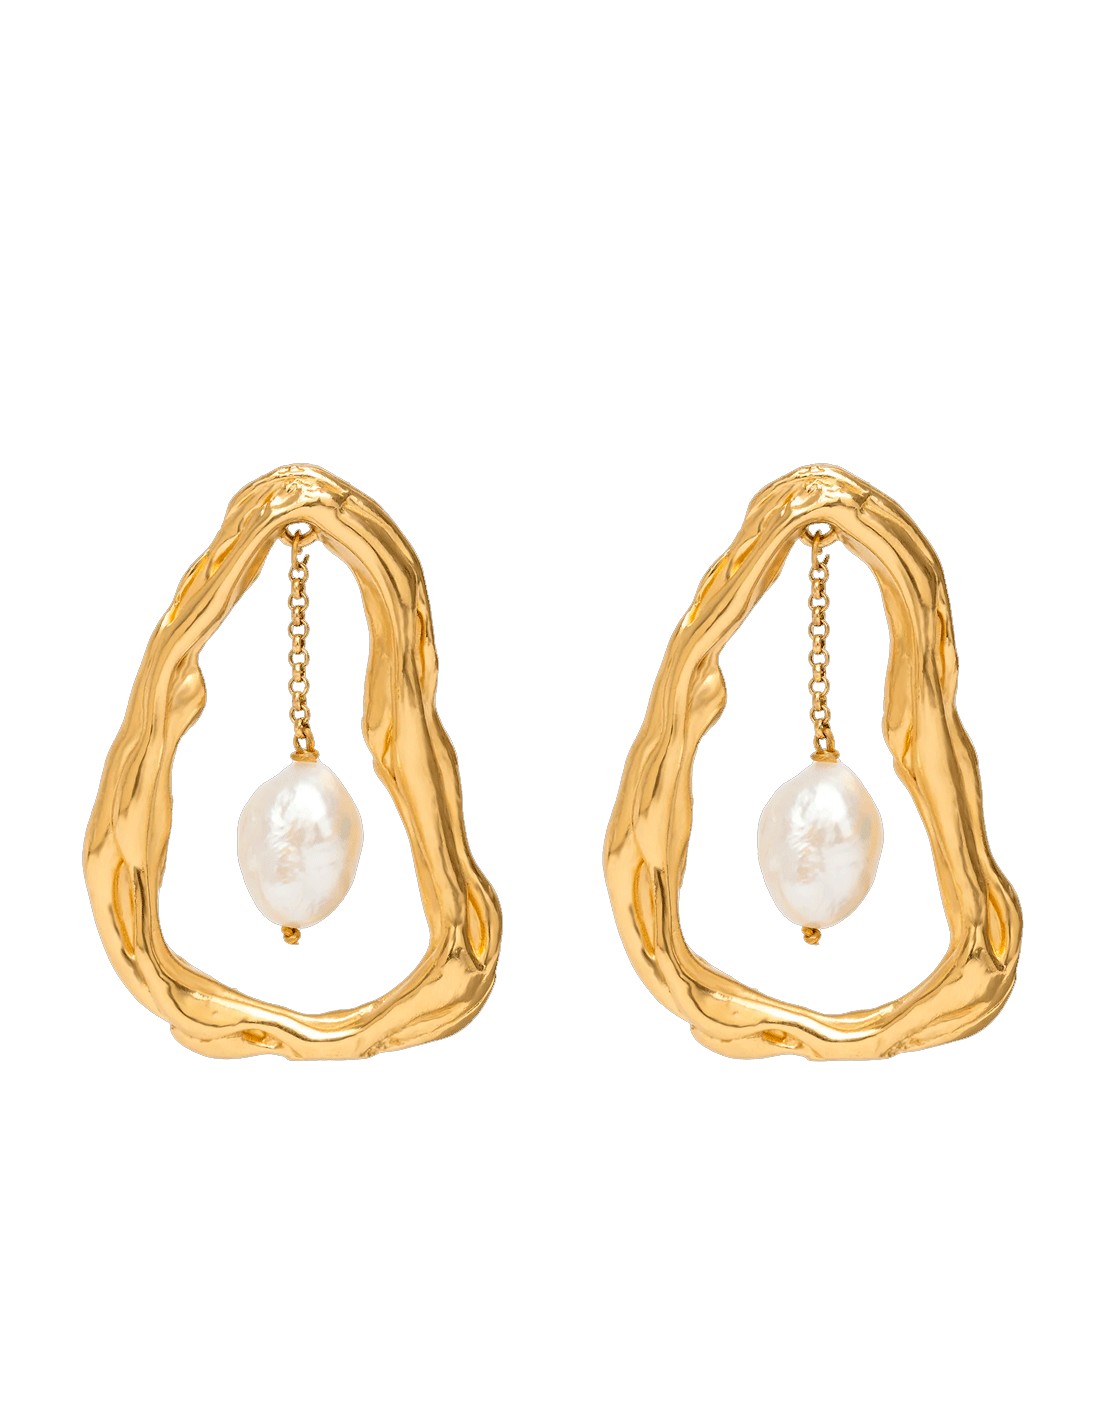 Yves Saint Laurent - Vintage gold nest pearl earrings - 4element